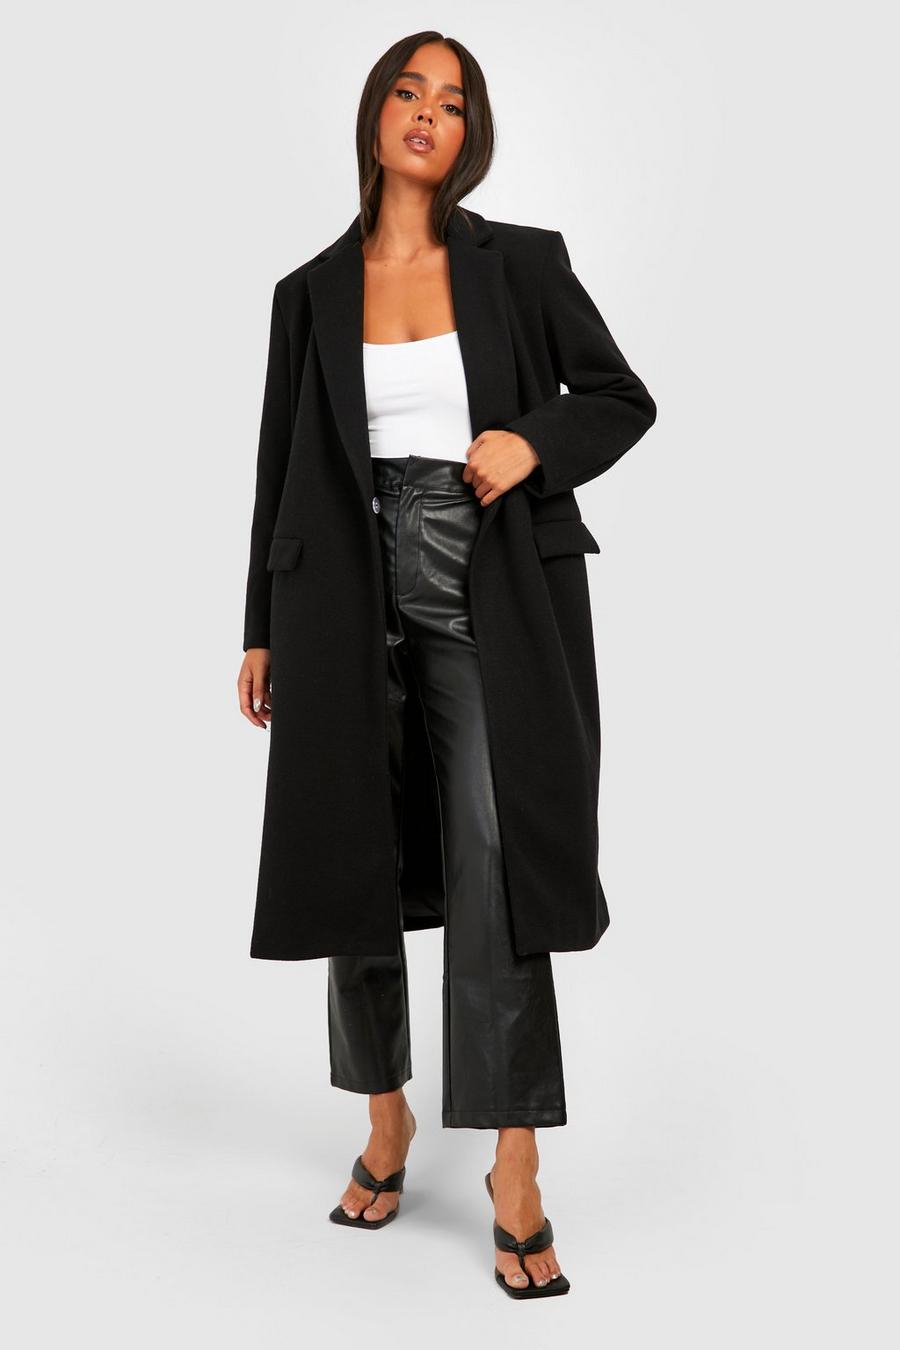 Cappotto lungo Petite Premium effetto lana, Black nero